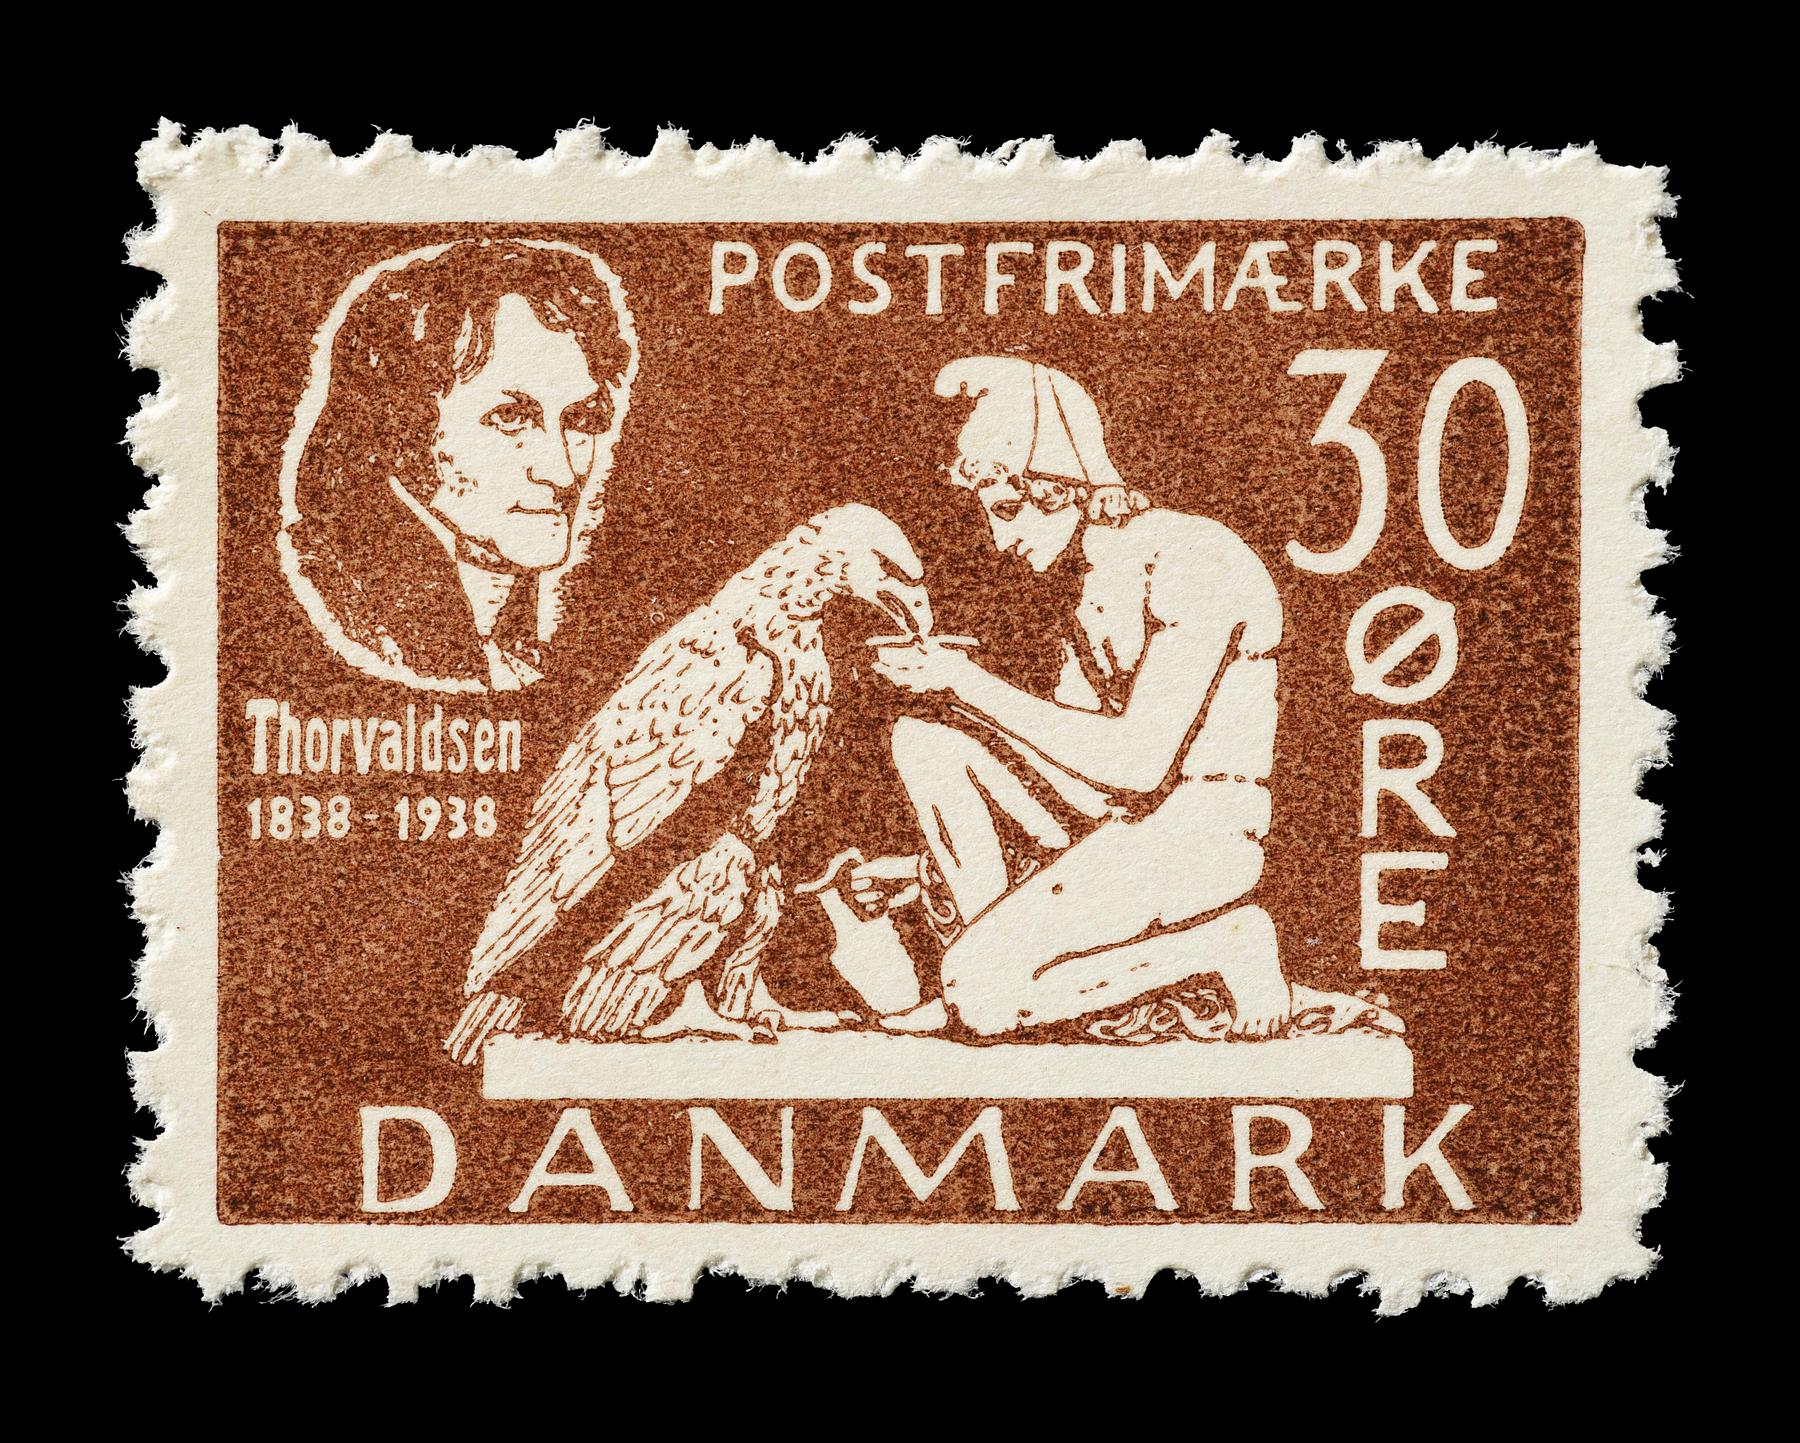 Prøvetryk af udkast til et dansk frimærke med Thorvaldsens Ganymedes med Jupiters ørn, E2341,26